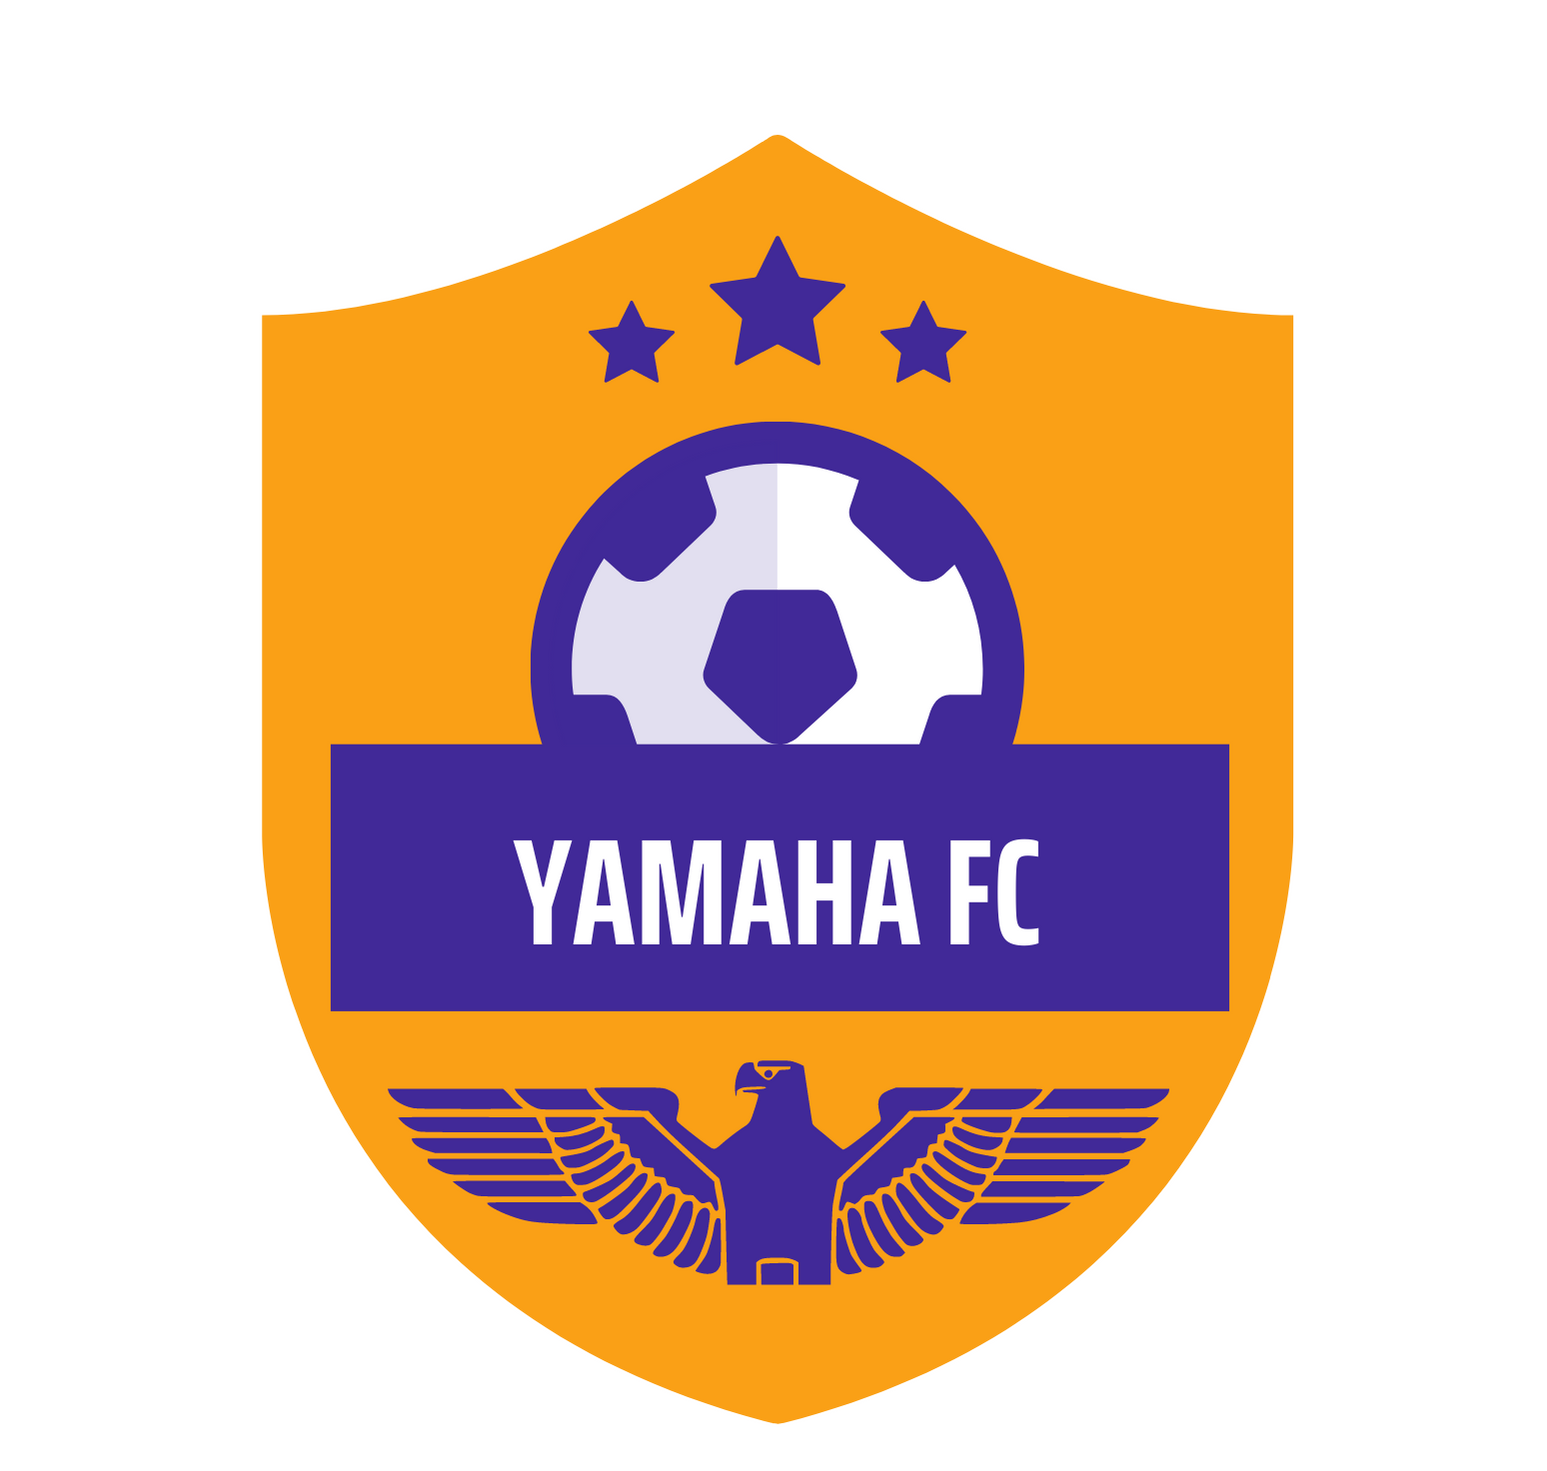 YAMAHA FC